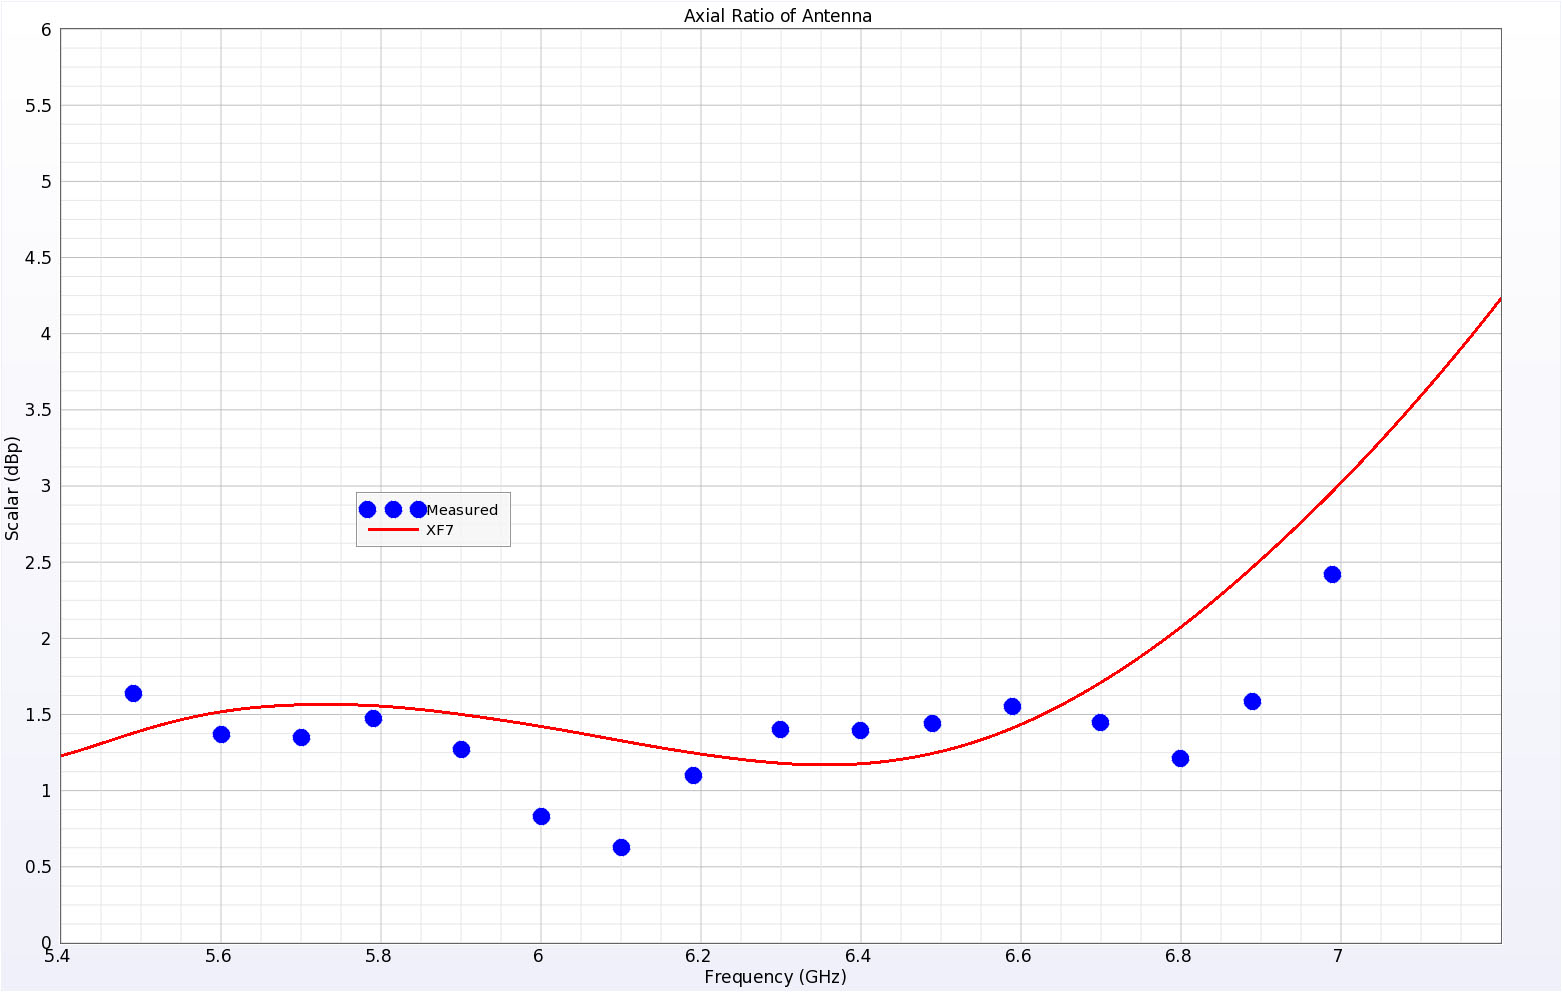 Figura 5La relación axial de la simulación y los datos medidos muestran resultados similares en toda la gama de frecuencias de interés.